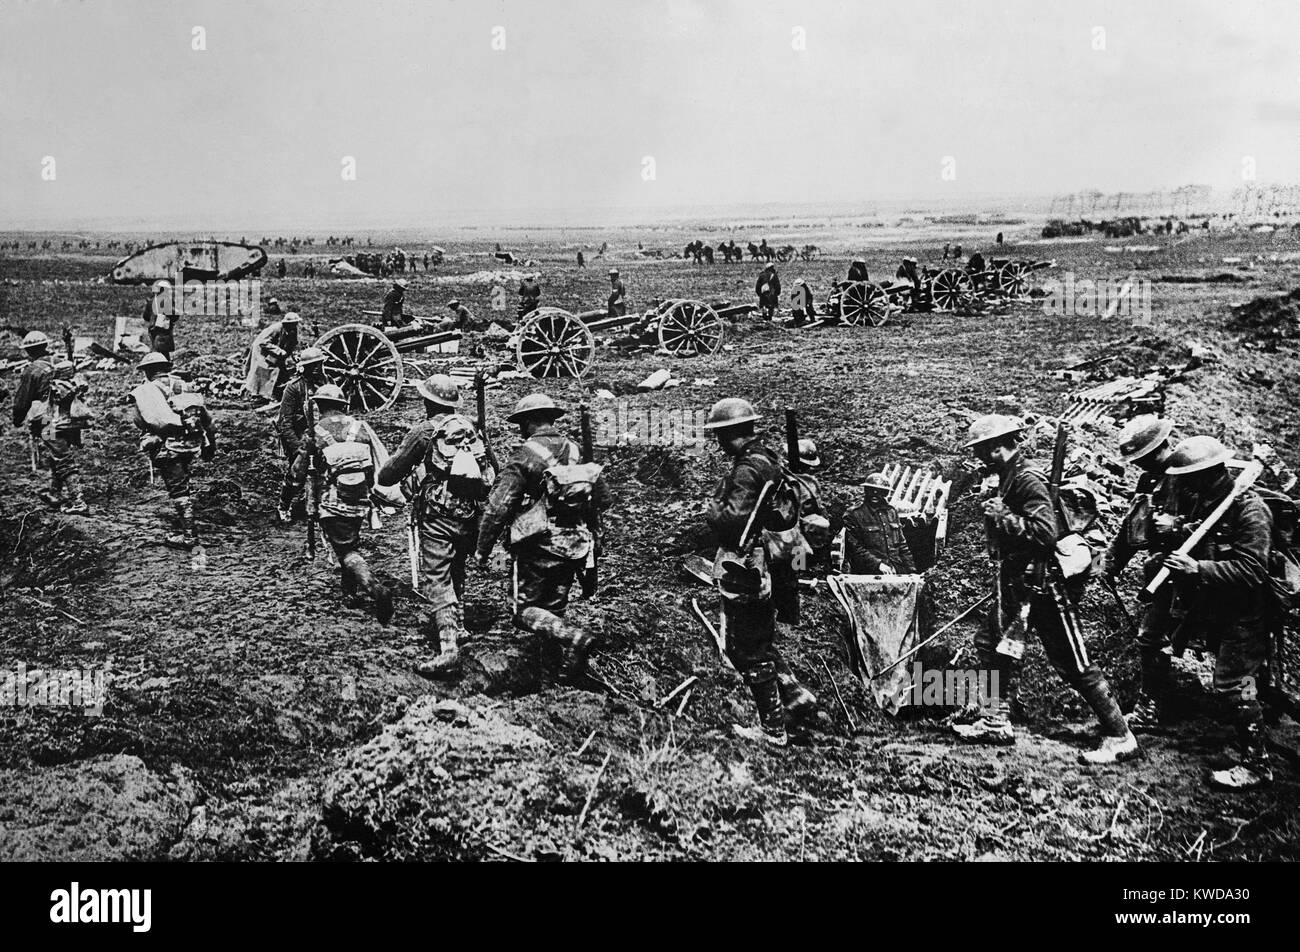 Weltkrieg 1. British Empire forces Gruppierung in der Nähe von Arras deutsche Verteidigung in Angriff zu nehmen. Die Infanterie, die Kommunikation Gräben, die artillerie und ein Tank kommen in Aktion, die Kavallerie in der Ferne Fortschritte in Richtung des sich zurückziehenden Deutschen. Ca. 9. April - 16. Mai 1917. (BSLOC 2013 1 140) Stockfoto